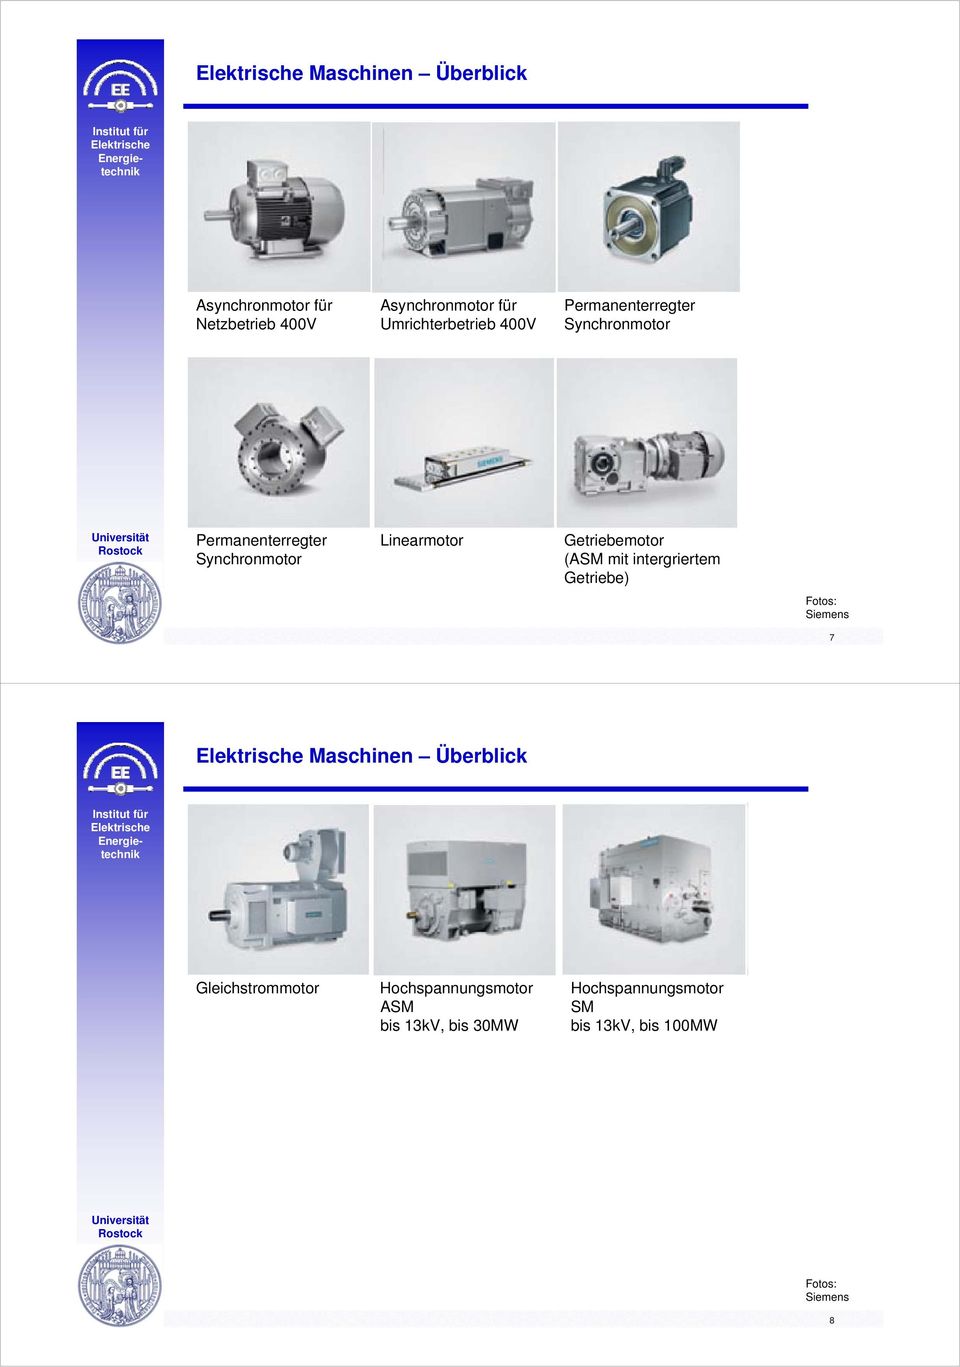 Getriebemotor (ASM mit intergriertem Getriebe) Fotos: Siemens 7 Maschinen Überblick